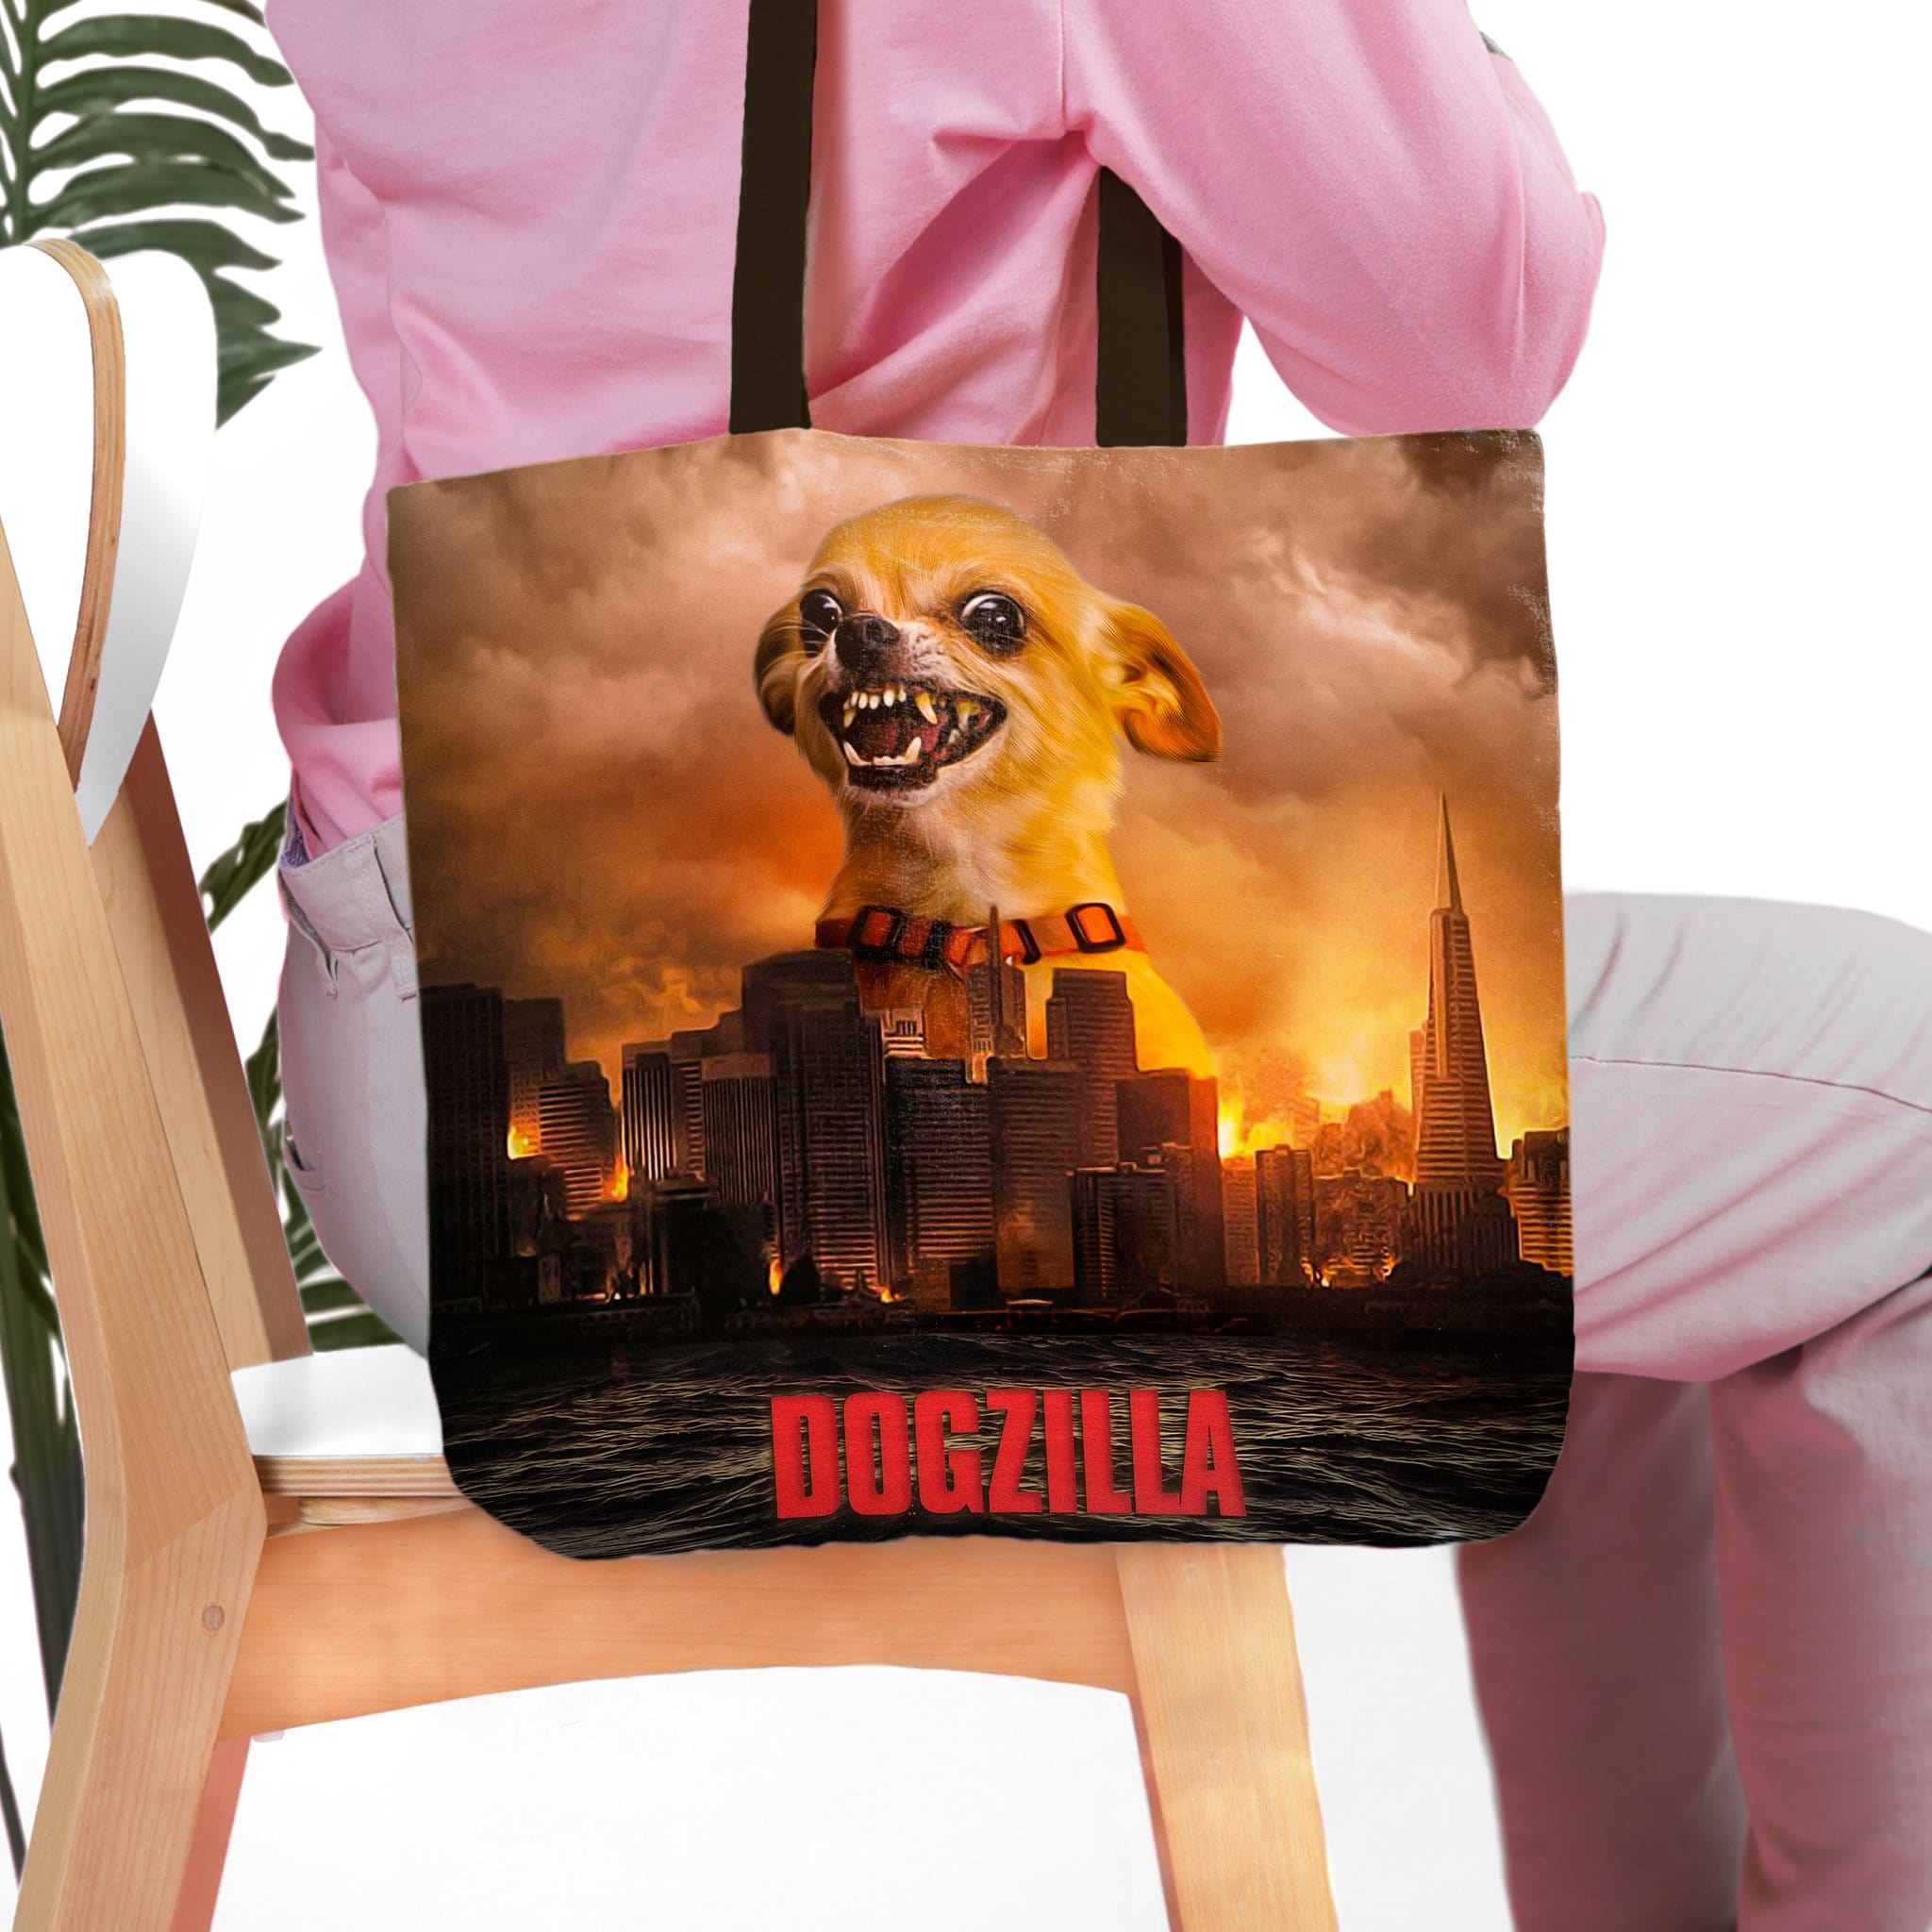 &#39;Dogzilla&#39; Personalized Tote Bag